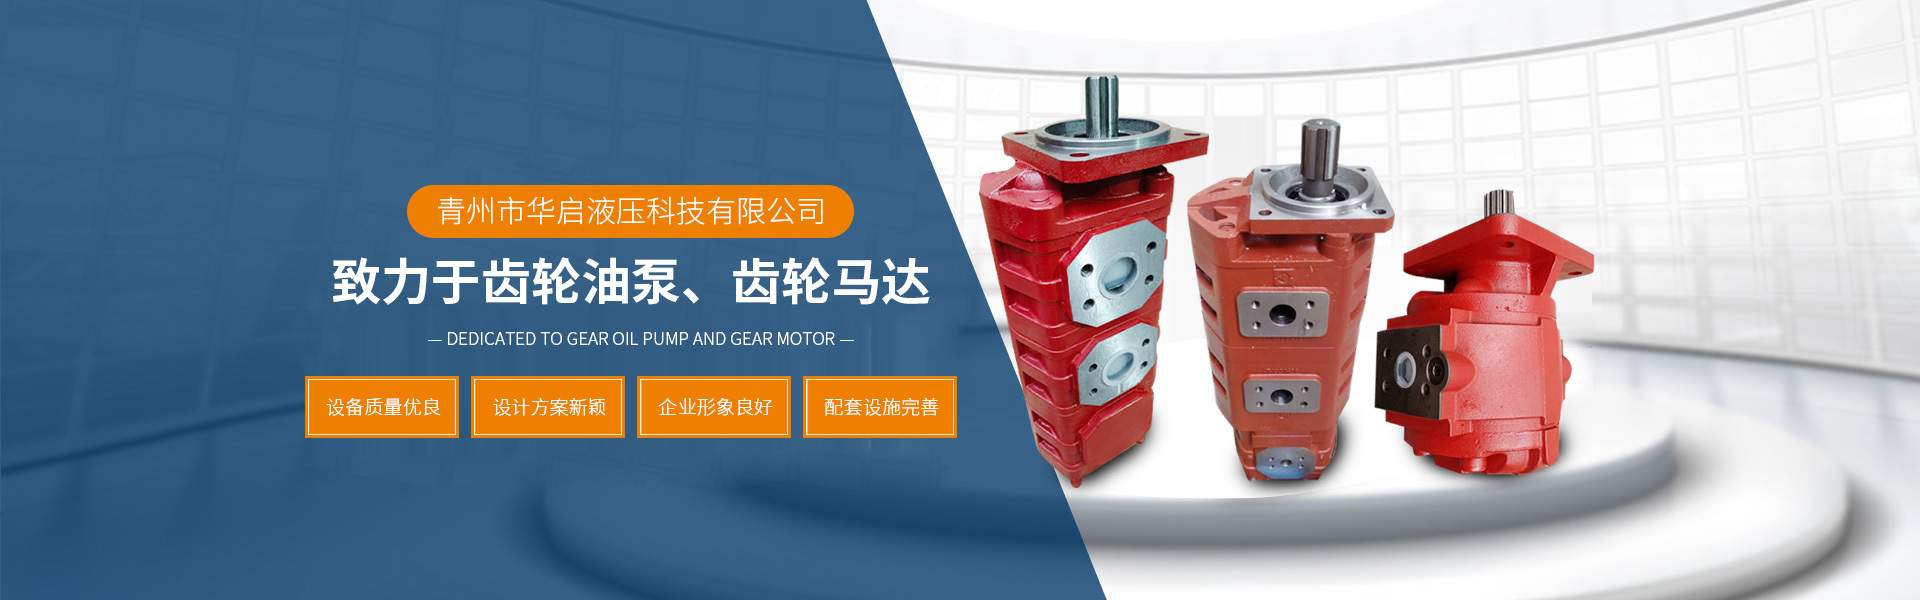 齒輪油泵和齒輪馬達的生產企業 - 青州市華啟液壓科技有限公司